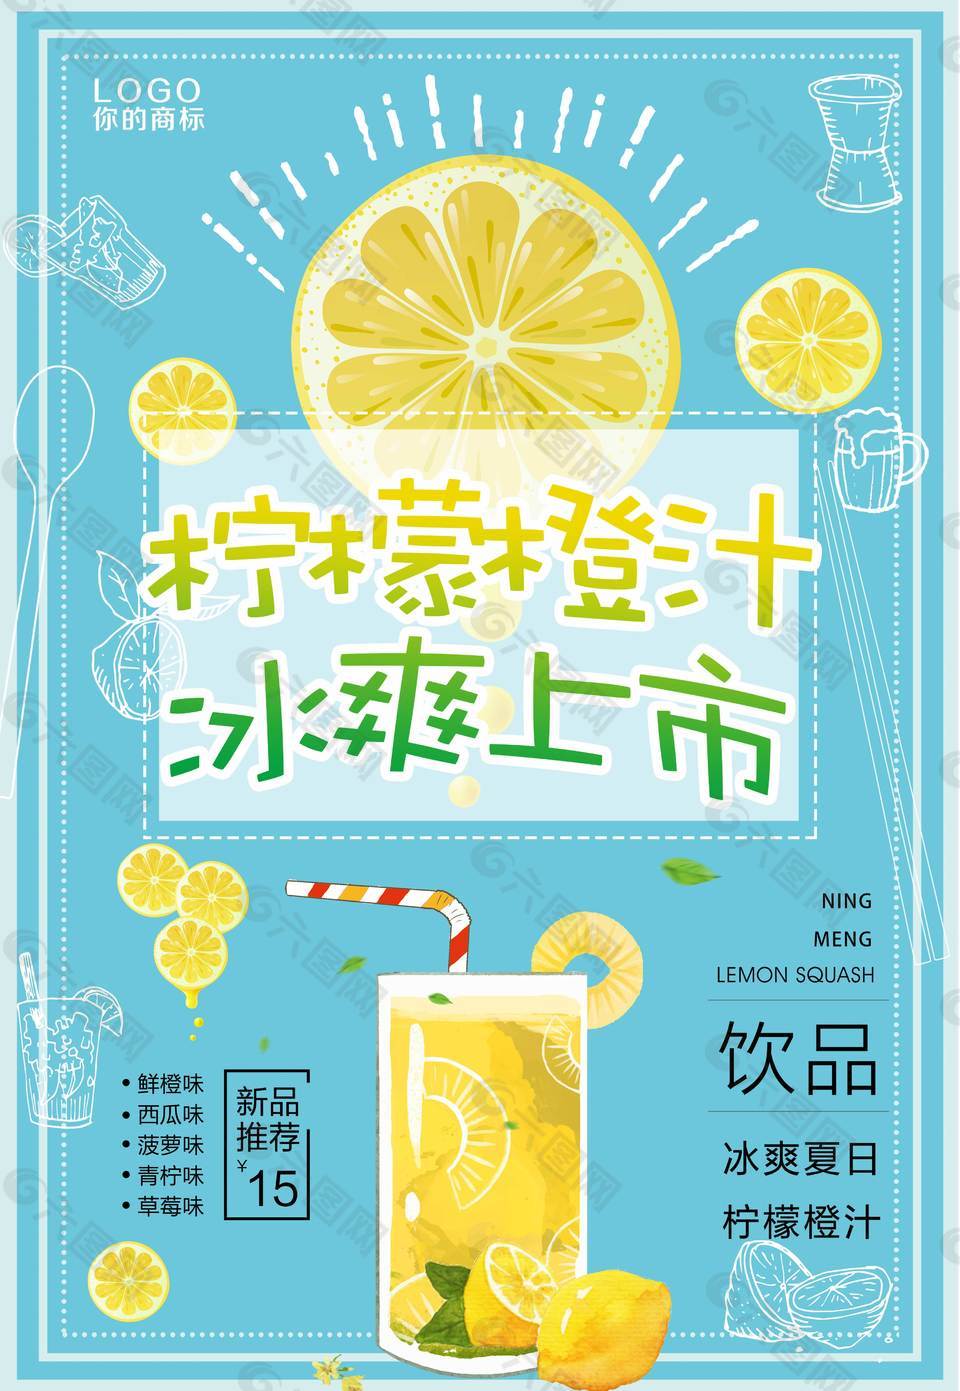 柠檬橙汁促销海报